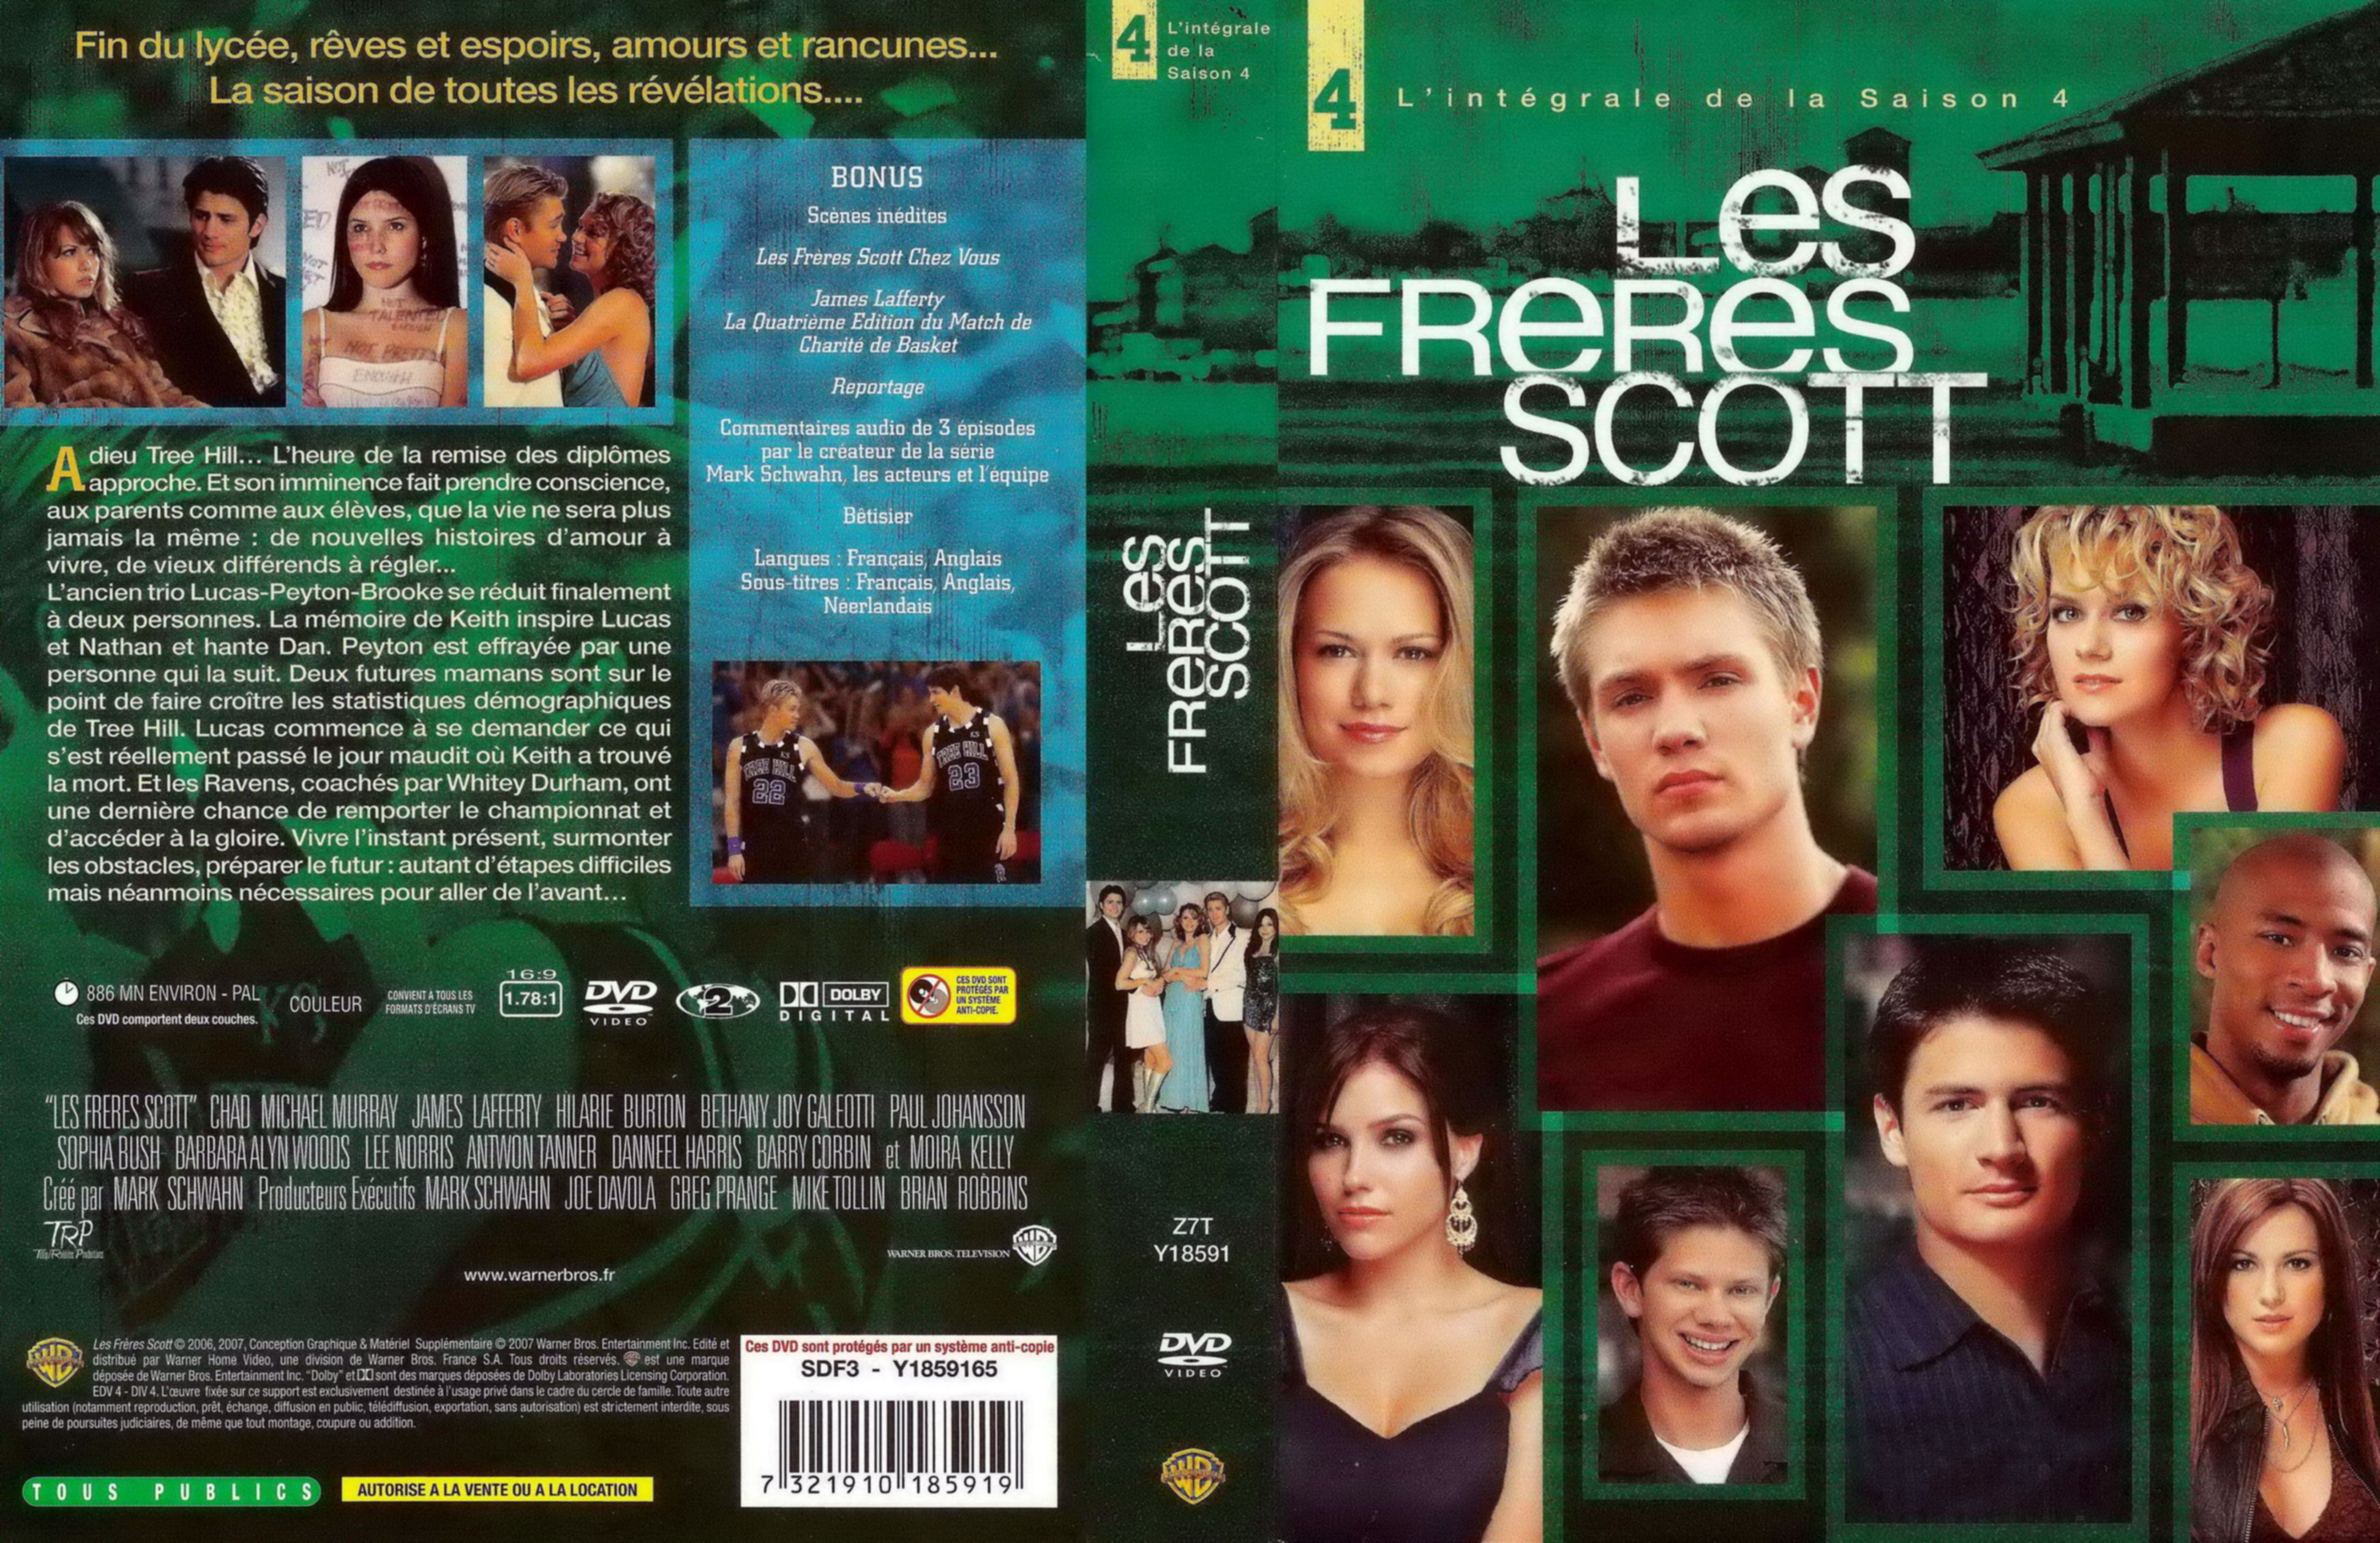 Jaquette DVD Les frres Scott Saison 4 COFFRET